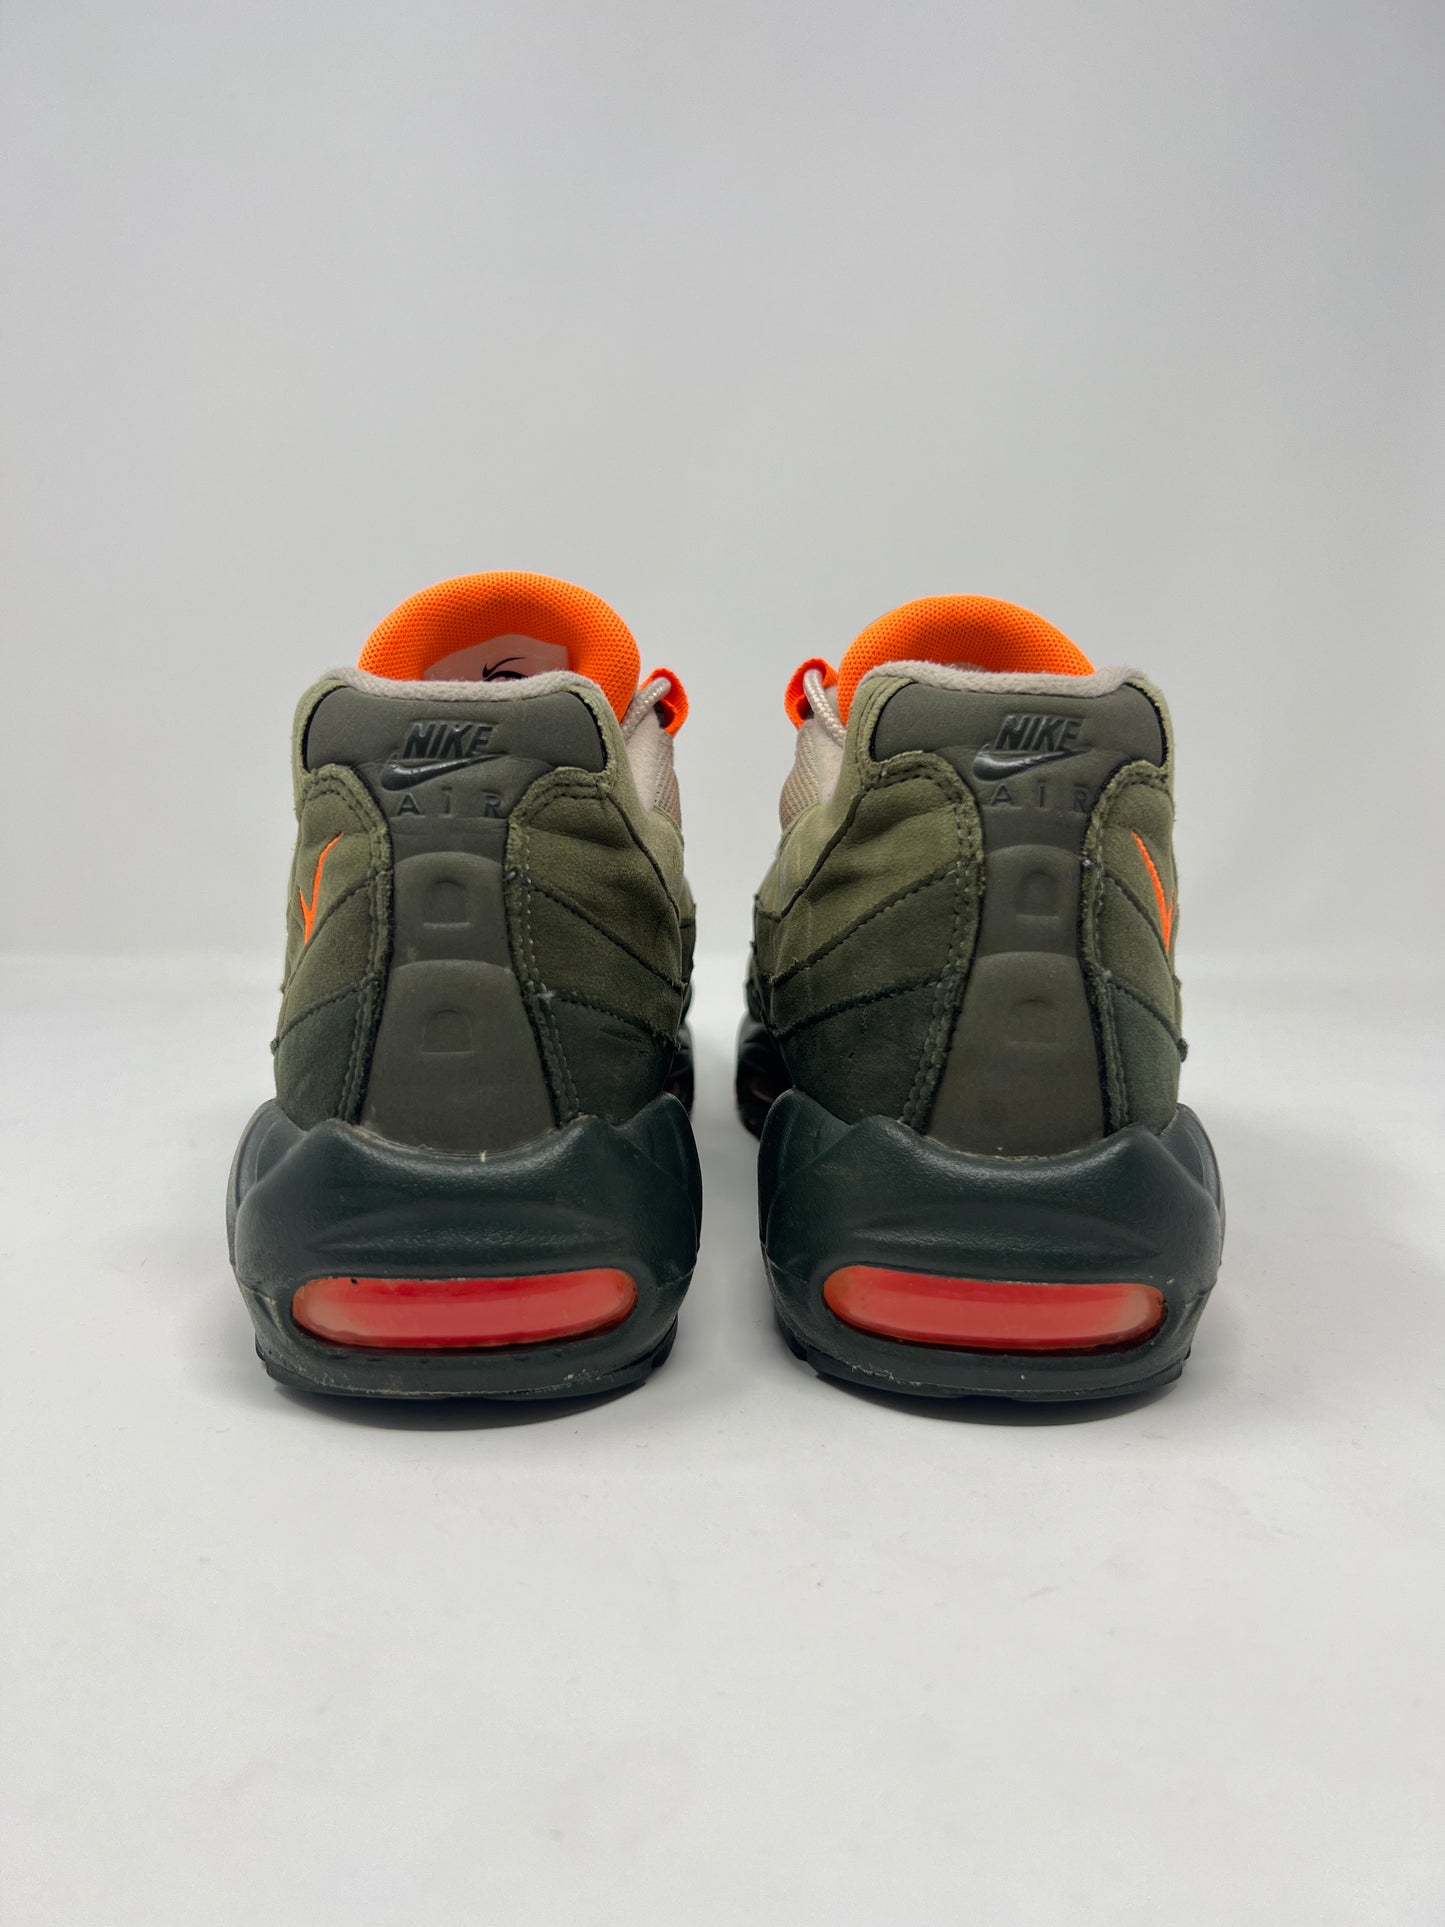 Nike Air Max 95 Total Orange UK8.5